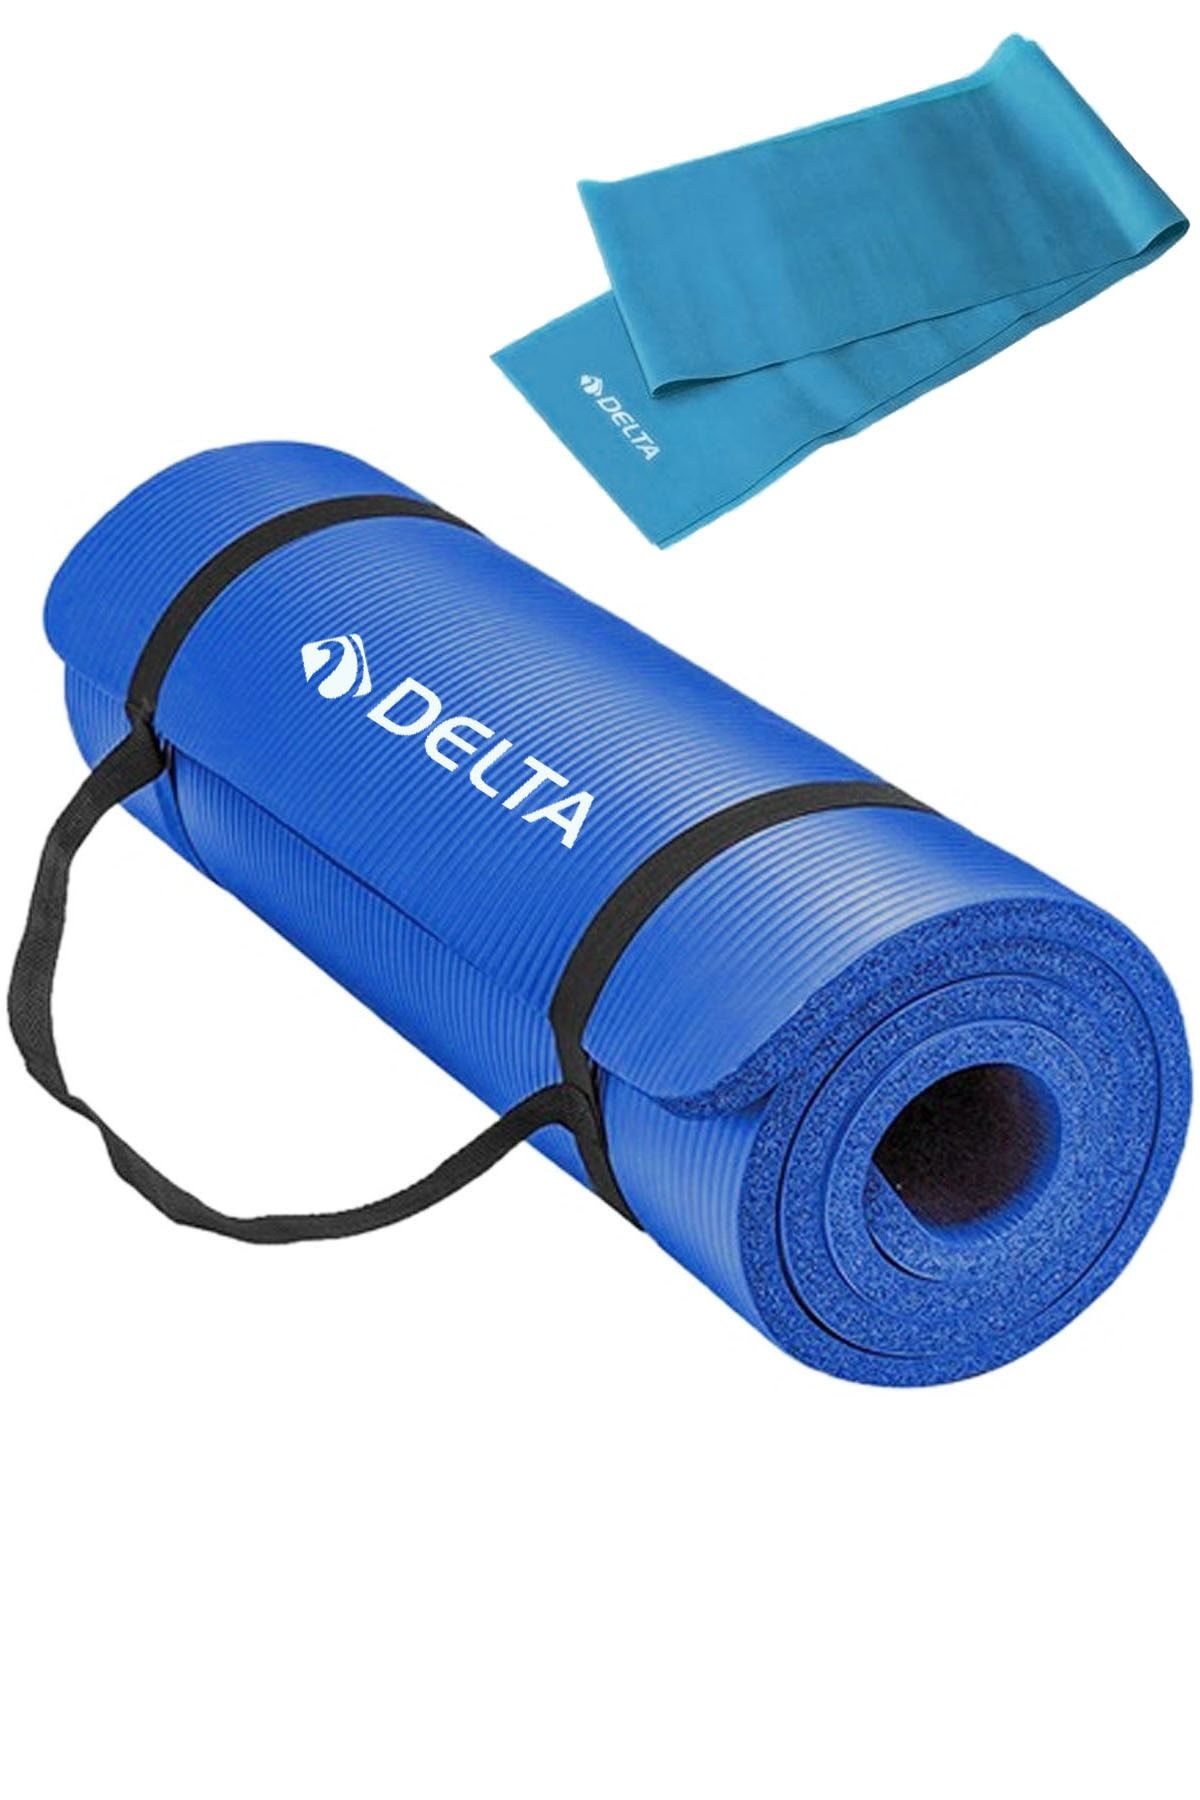 Delta 1.5 Cm Taşıma Askılı Pilates Minderi Egzersiz Yoga Matı 15 Mm, 120x15 Cm Plates Bandı Lastiği